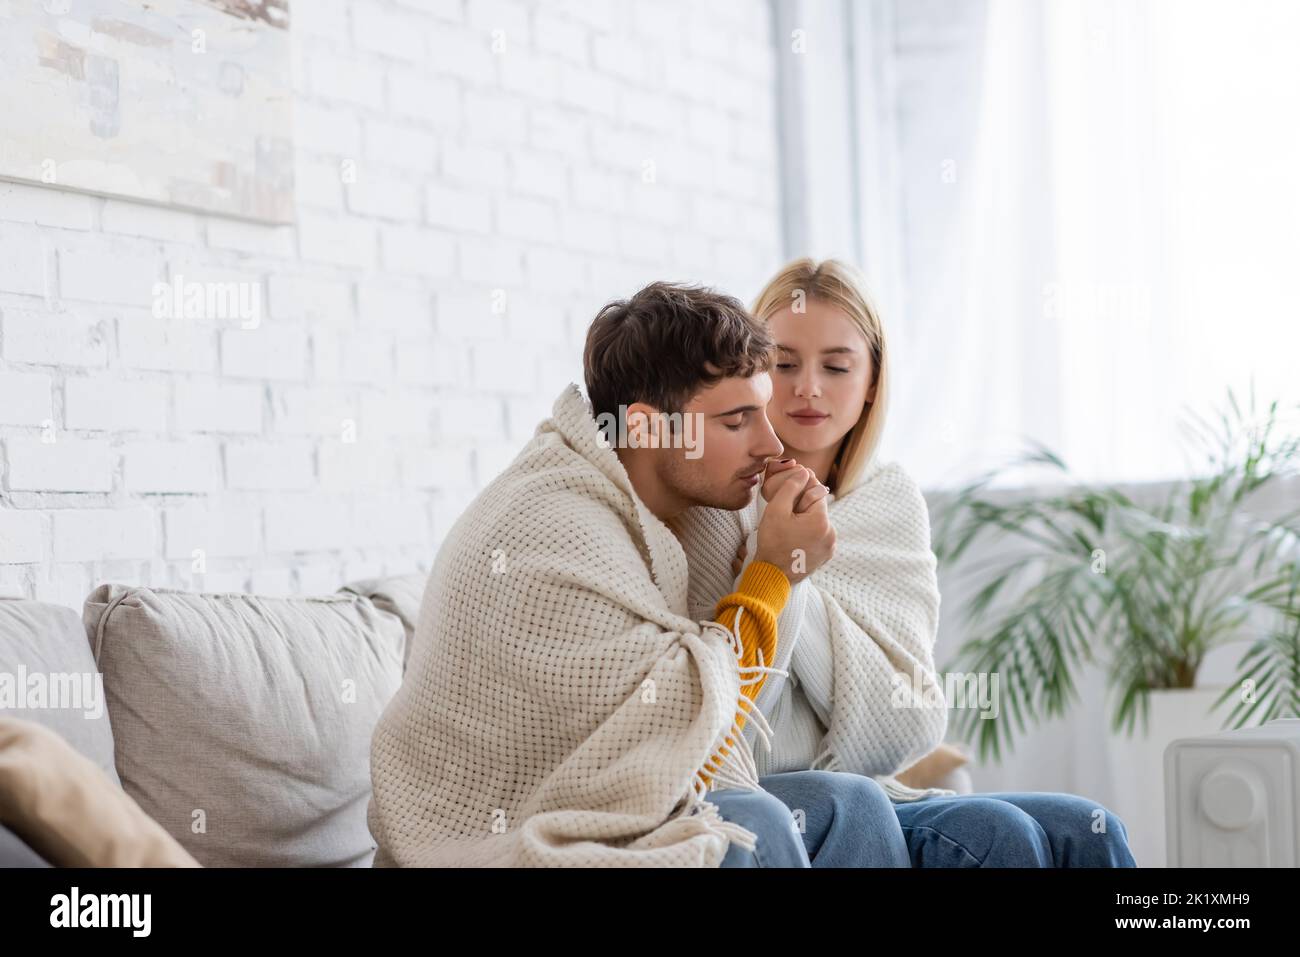 Junger Mann wärmende Hand der Freundin in Decke im Wohnzimmer sitzend bedeckt, Stockbild Stockfoto